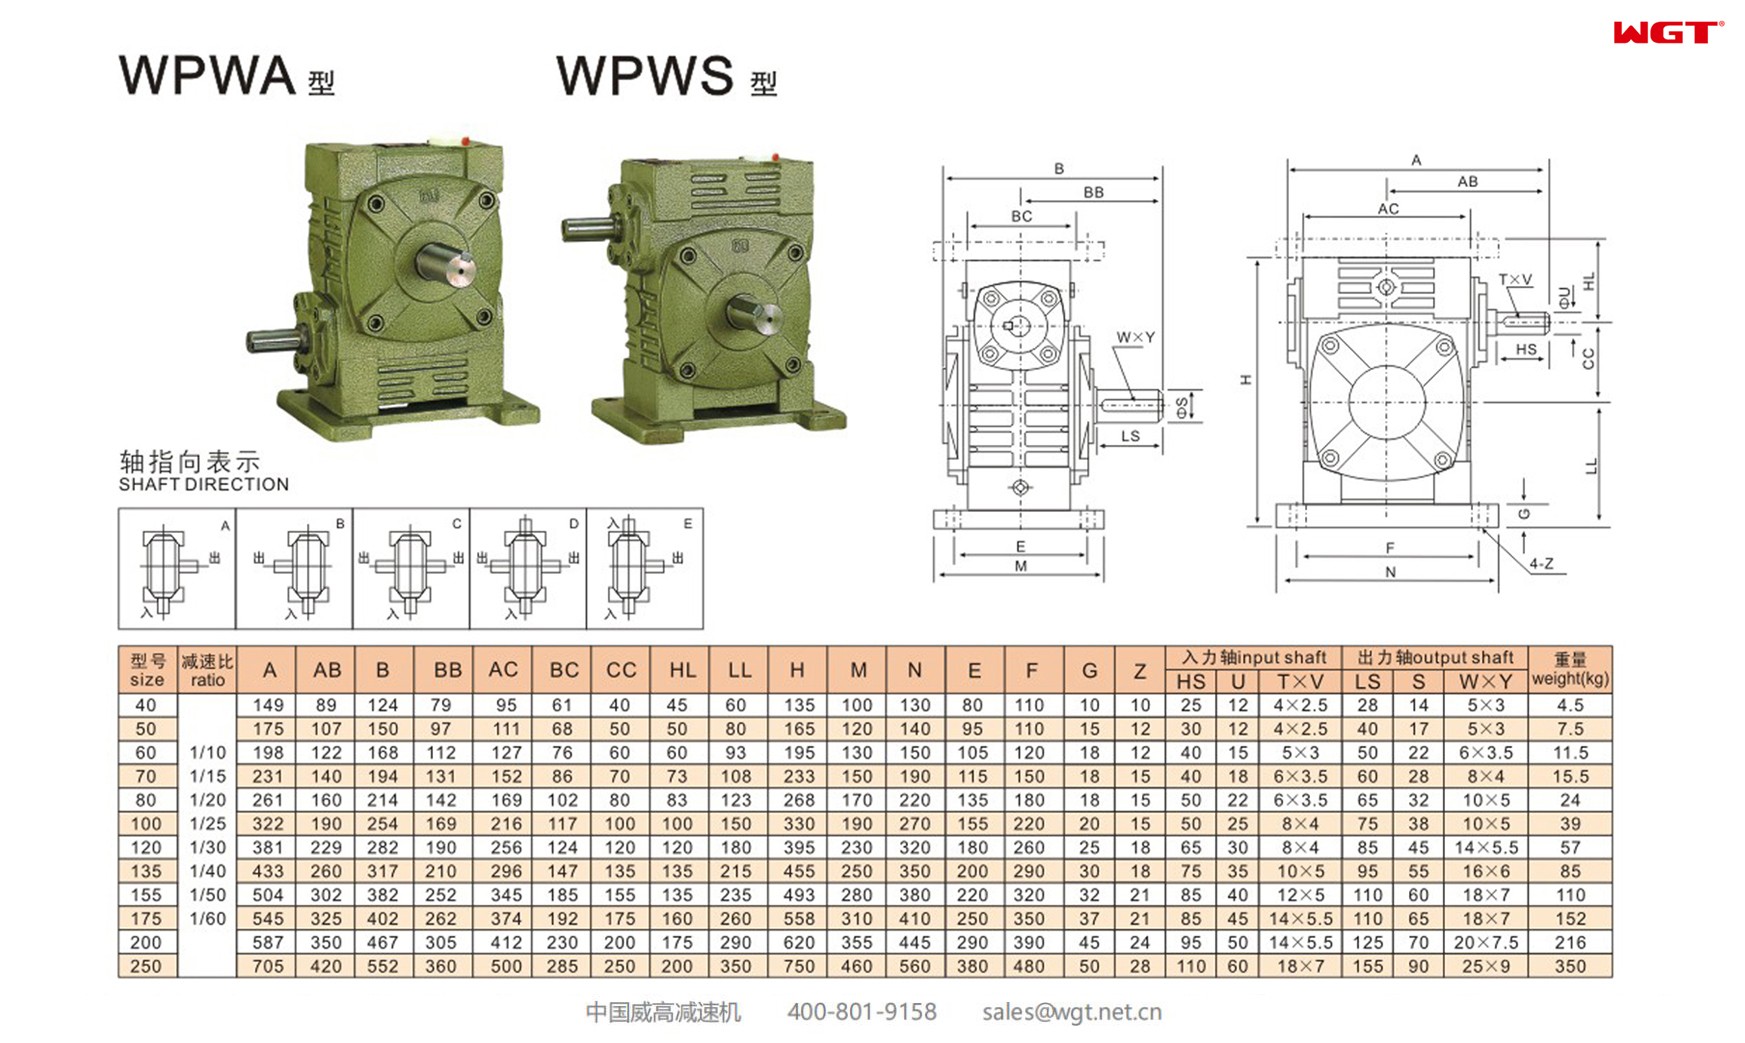 WPWA120 worm gear reducer universal speed reducer 